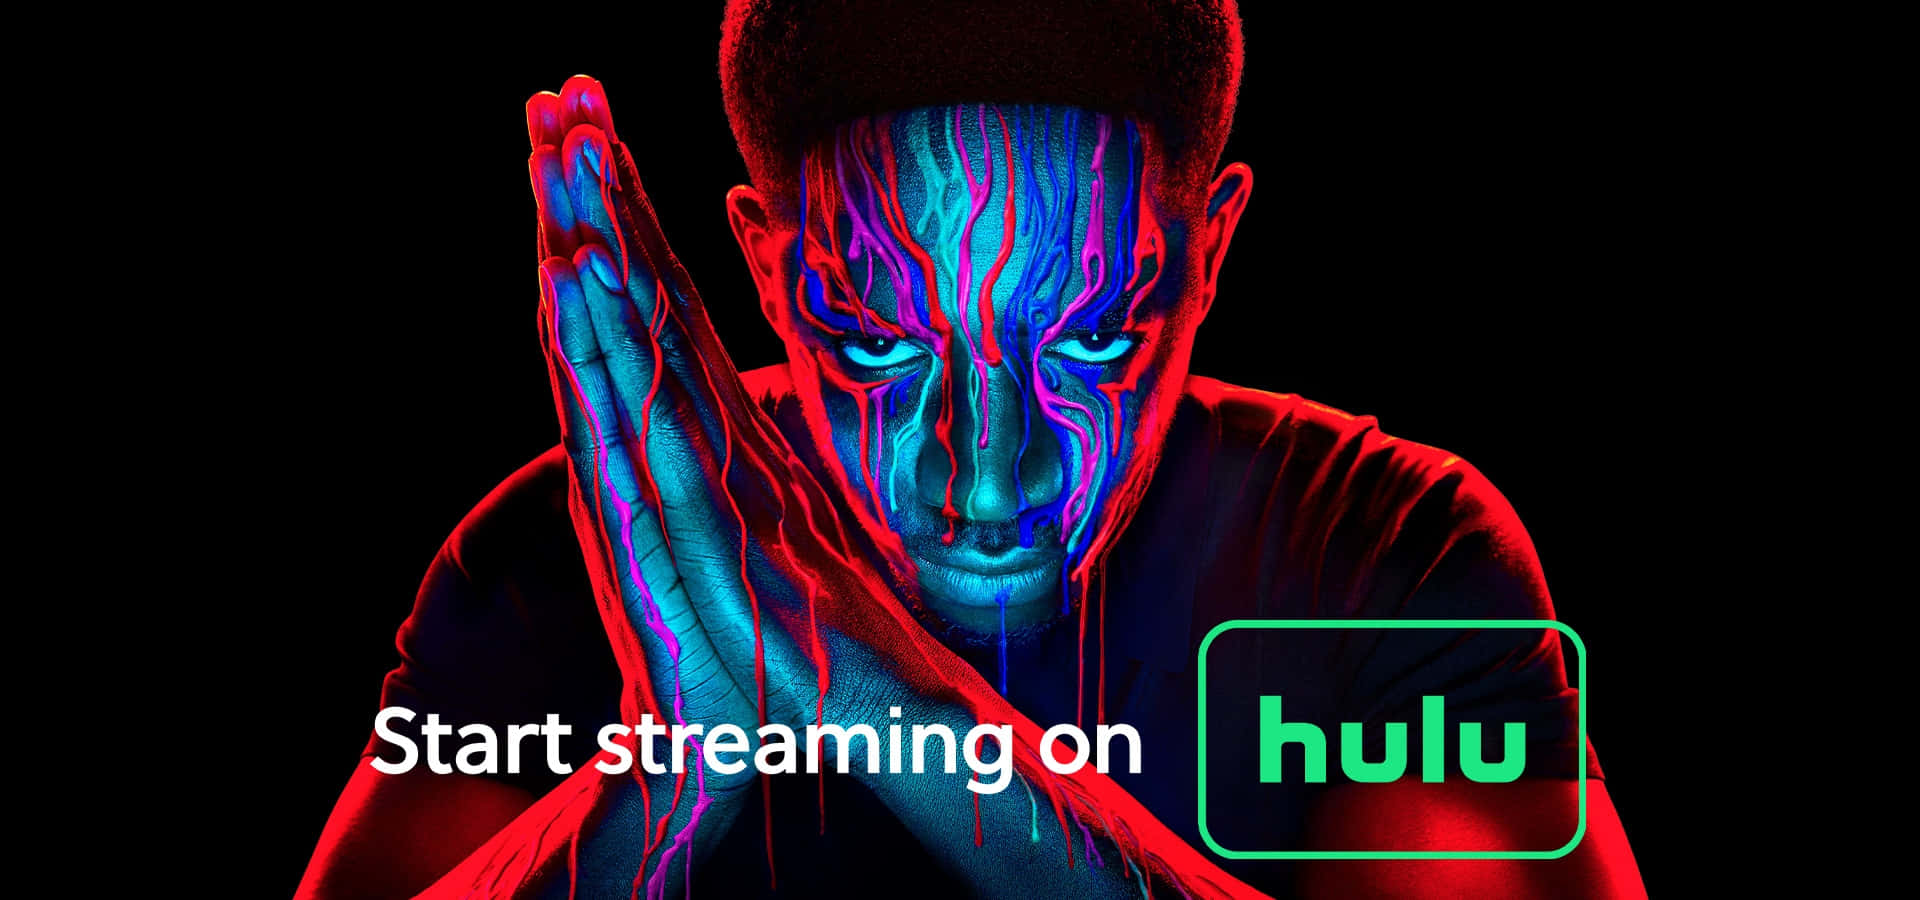 Imagende Hulu - Transmite Televisión Y Películas.